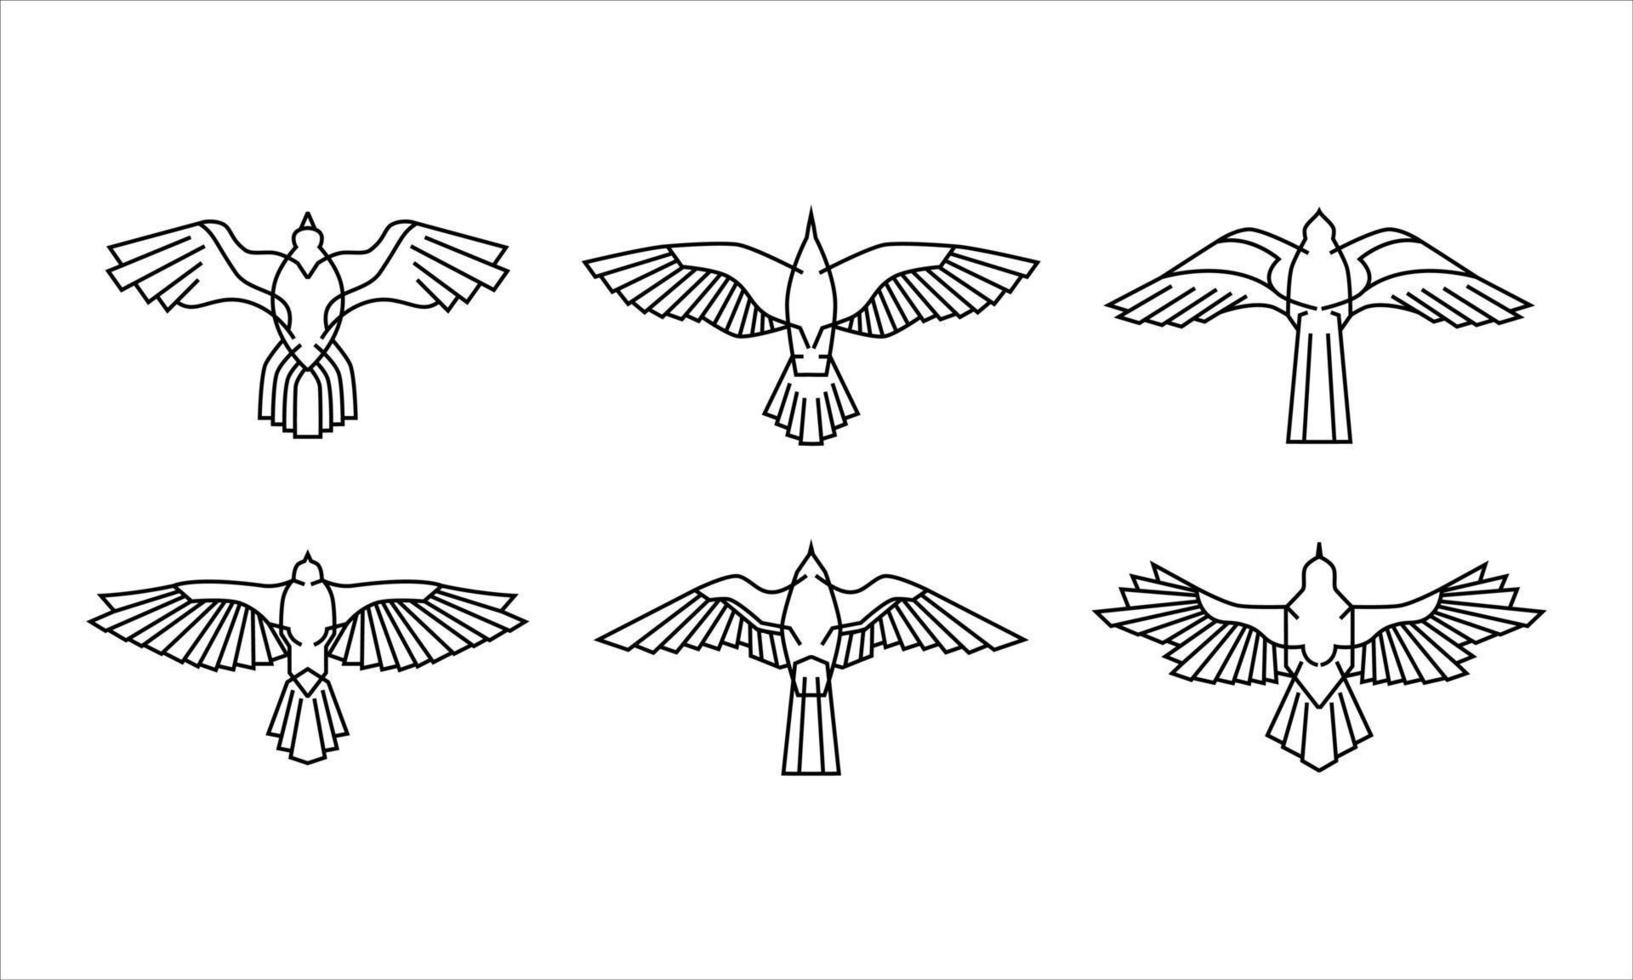 conjunto de logotipo de icono de halcón. Ilustración del antiguo Egipto de la colección de aves halcón. símbolo del poder y la vida eterna. estilo moderno y minimalista en dibujo vectorial monoline. vector